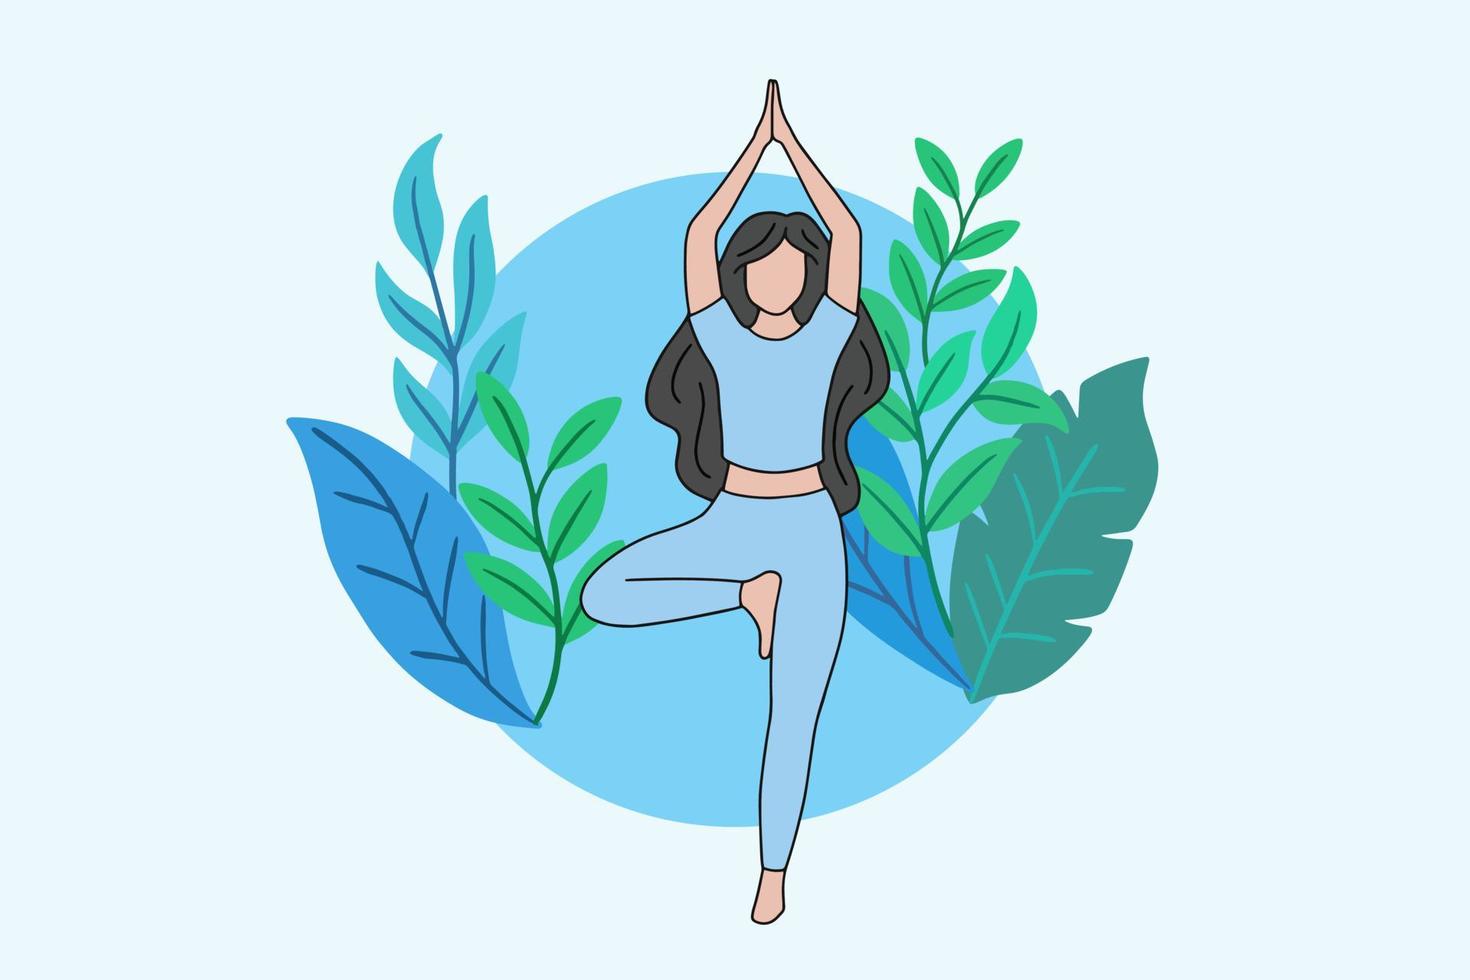 mulher meditando em ioga pacífica e meditação de estilo de vida saudável as pessoas posam design de desenho animado plano de relaxamento espiritual vetor